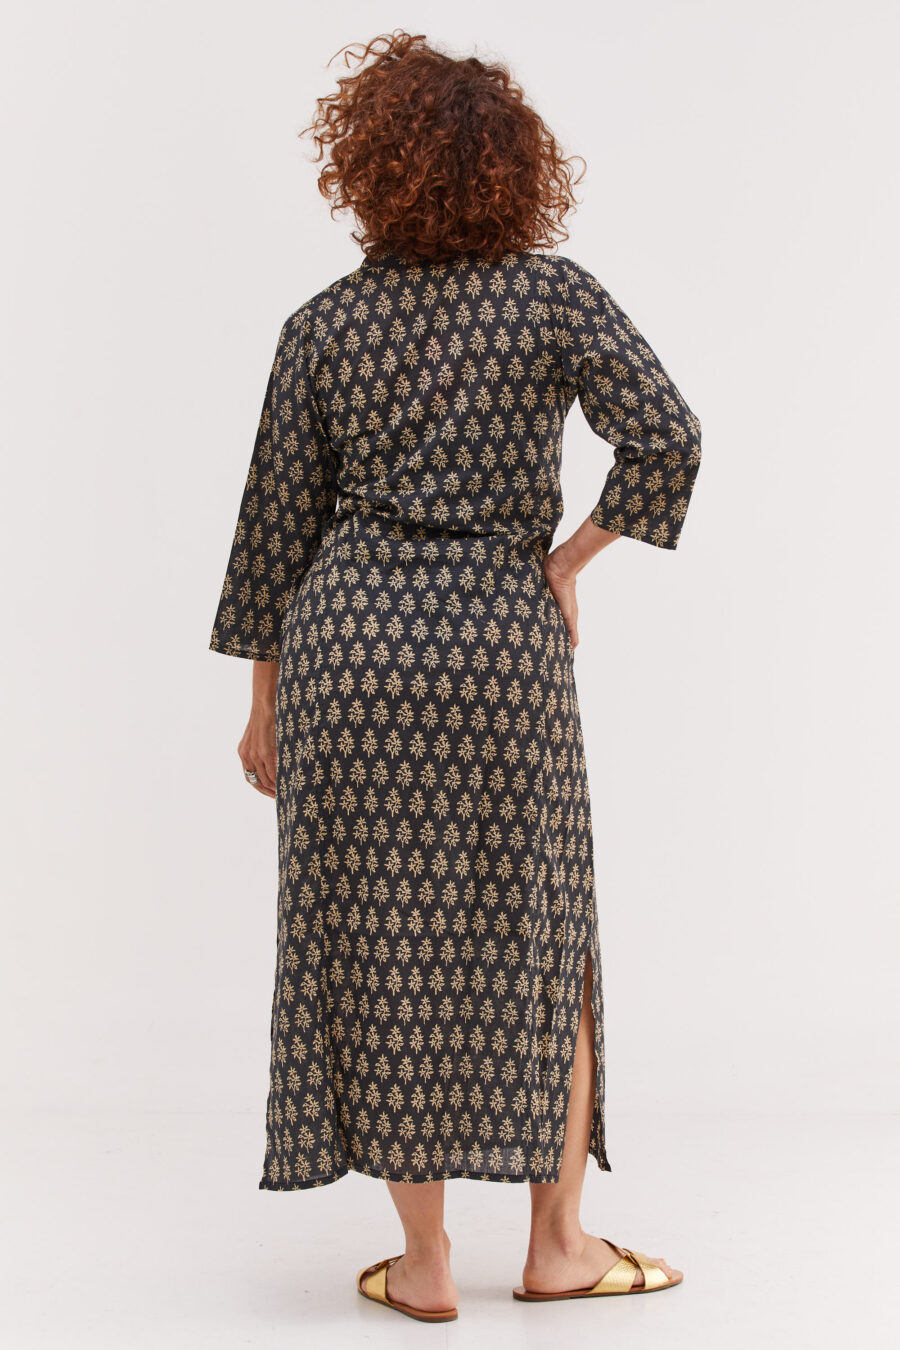 גלביה לנשים | גלבייה בעיצוב ייחודי - שמלה בצבע שחור עם הדפס אוריינטלי בצבע שמנת